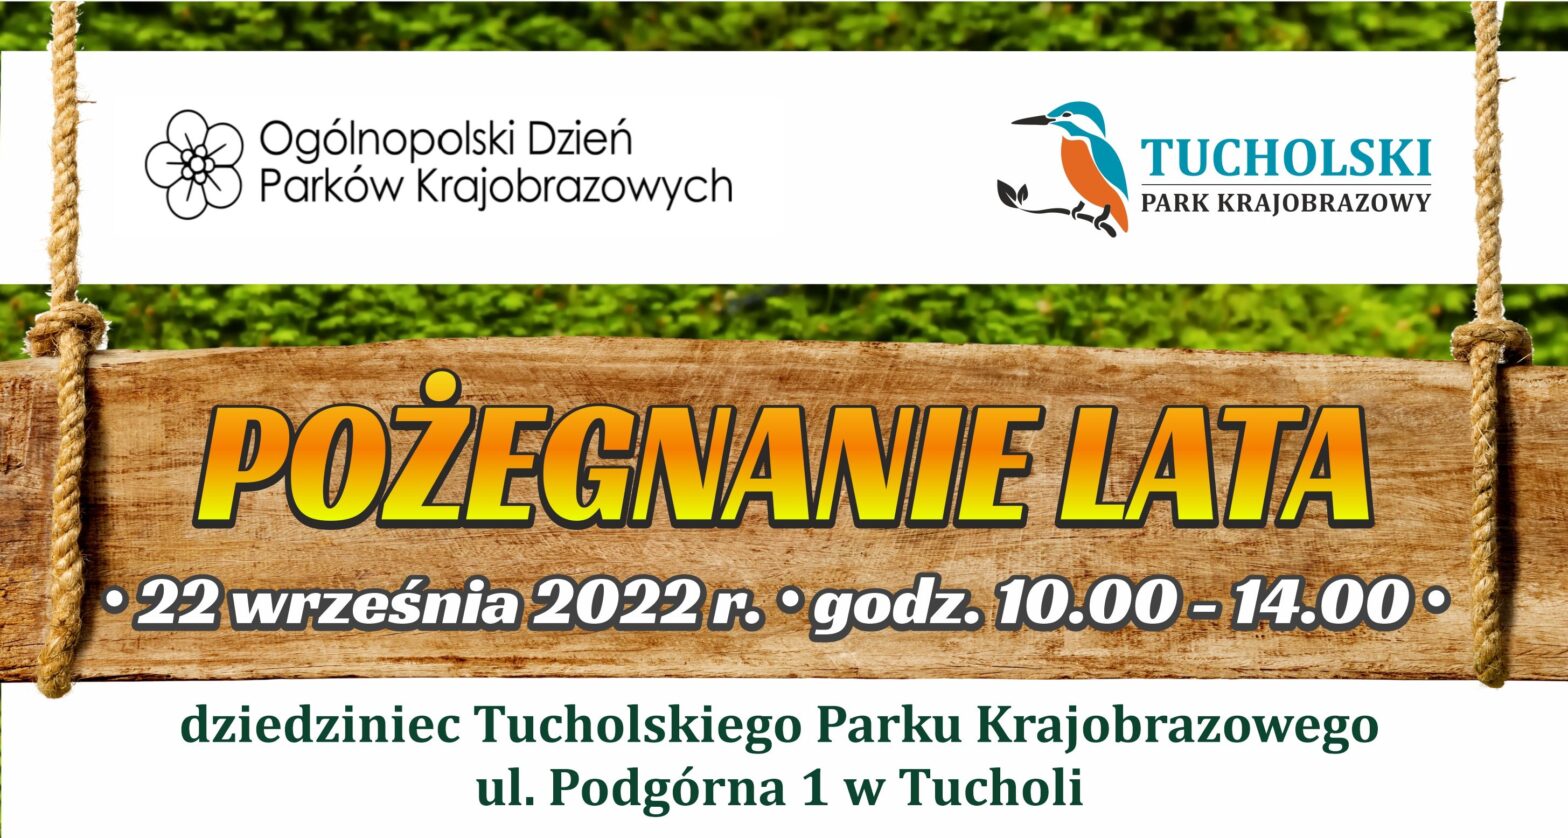 Tucholski Park Krajobrazowy zaprasza na wydarzenie Pożegnanie Lata.